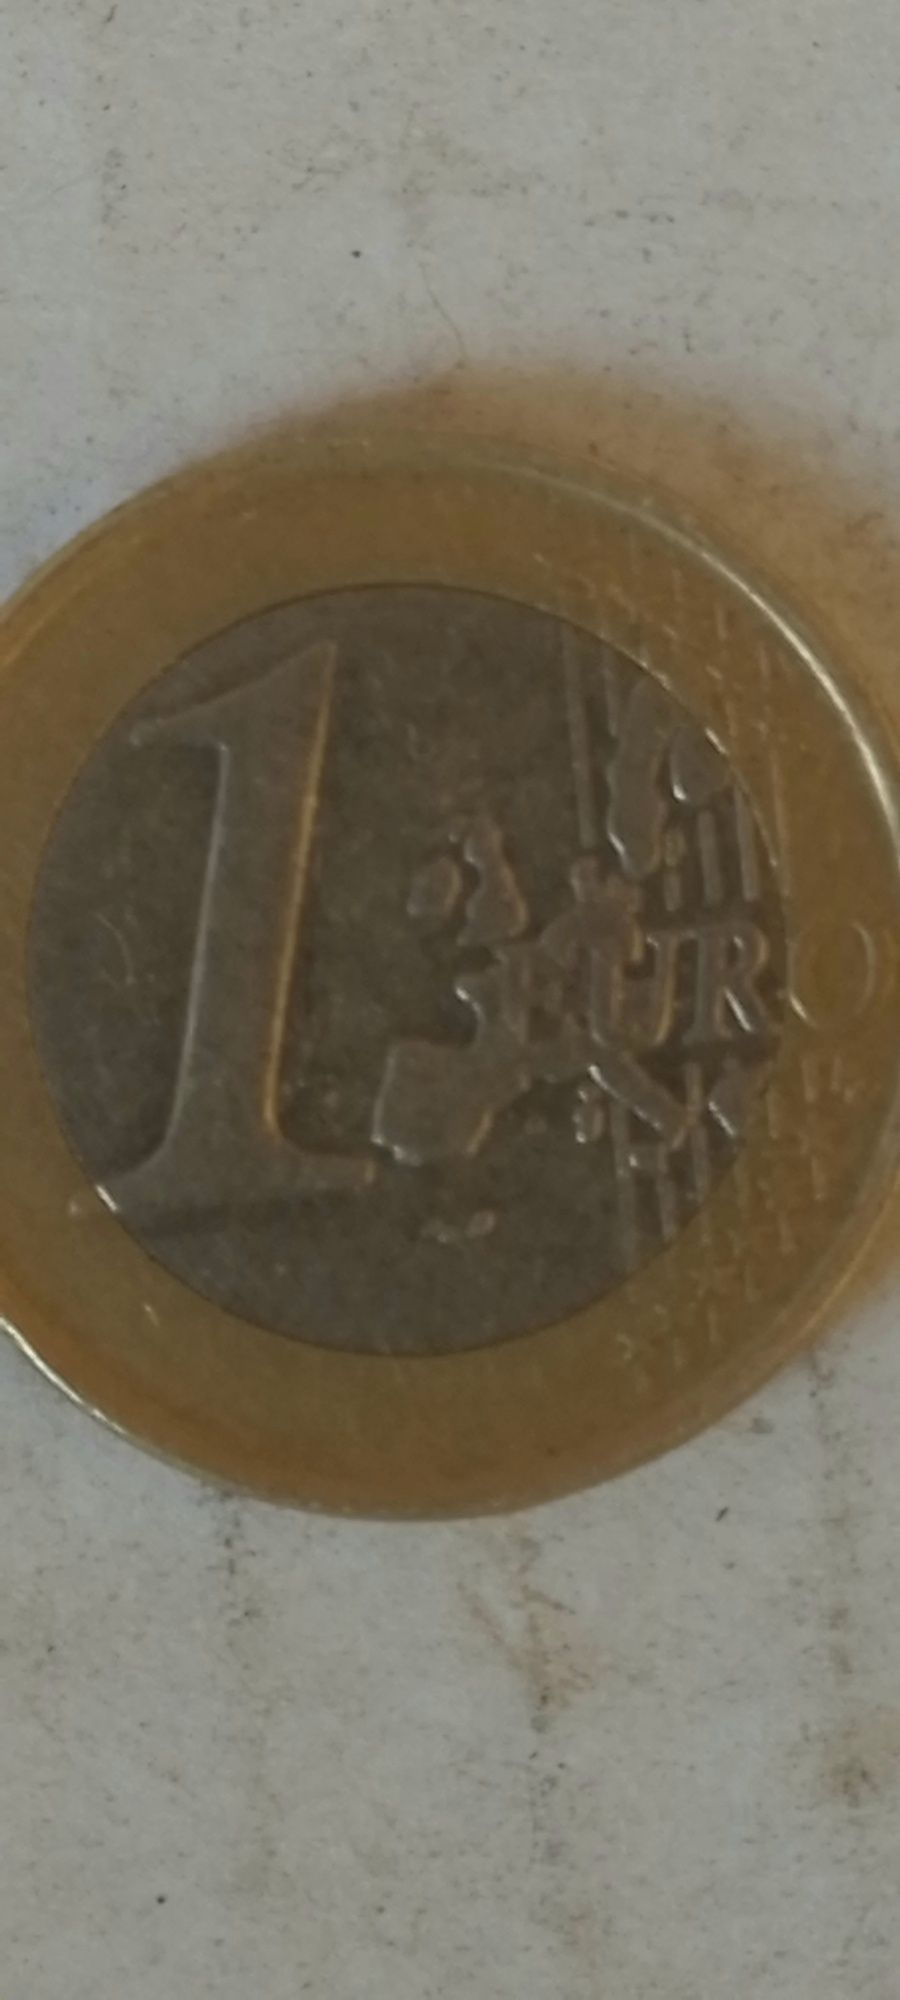 Vindem monede euro anul 2002